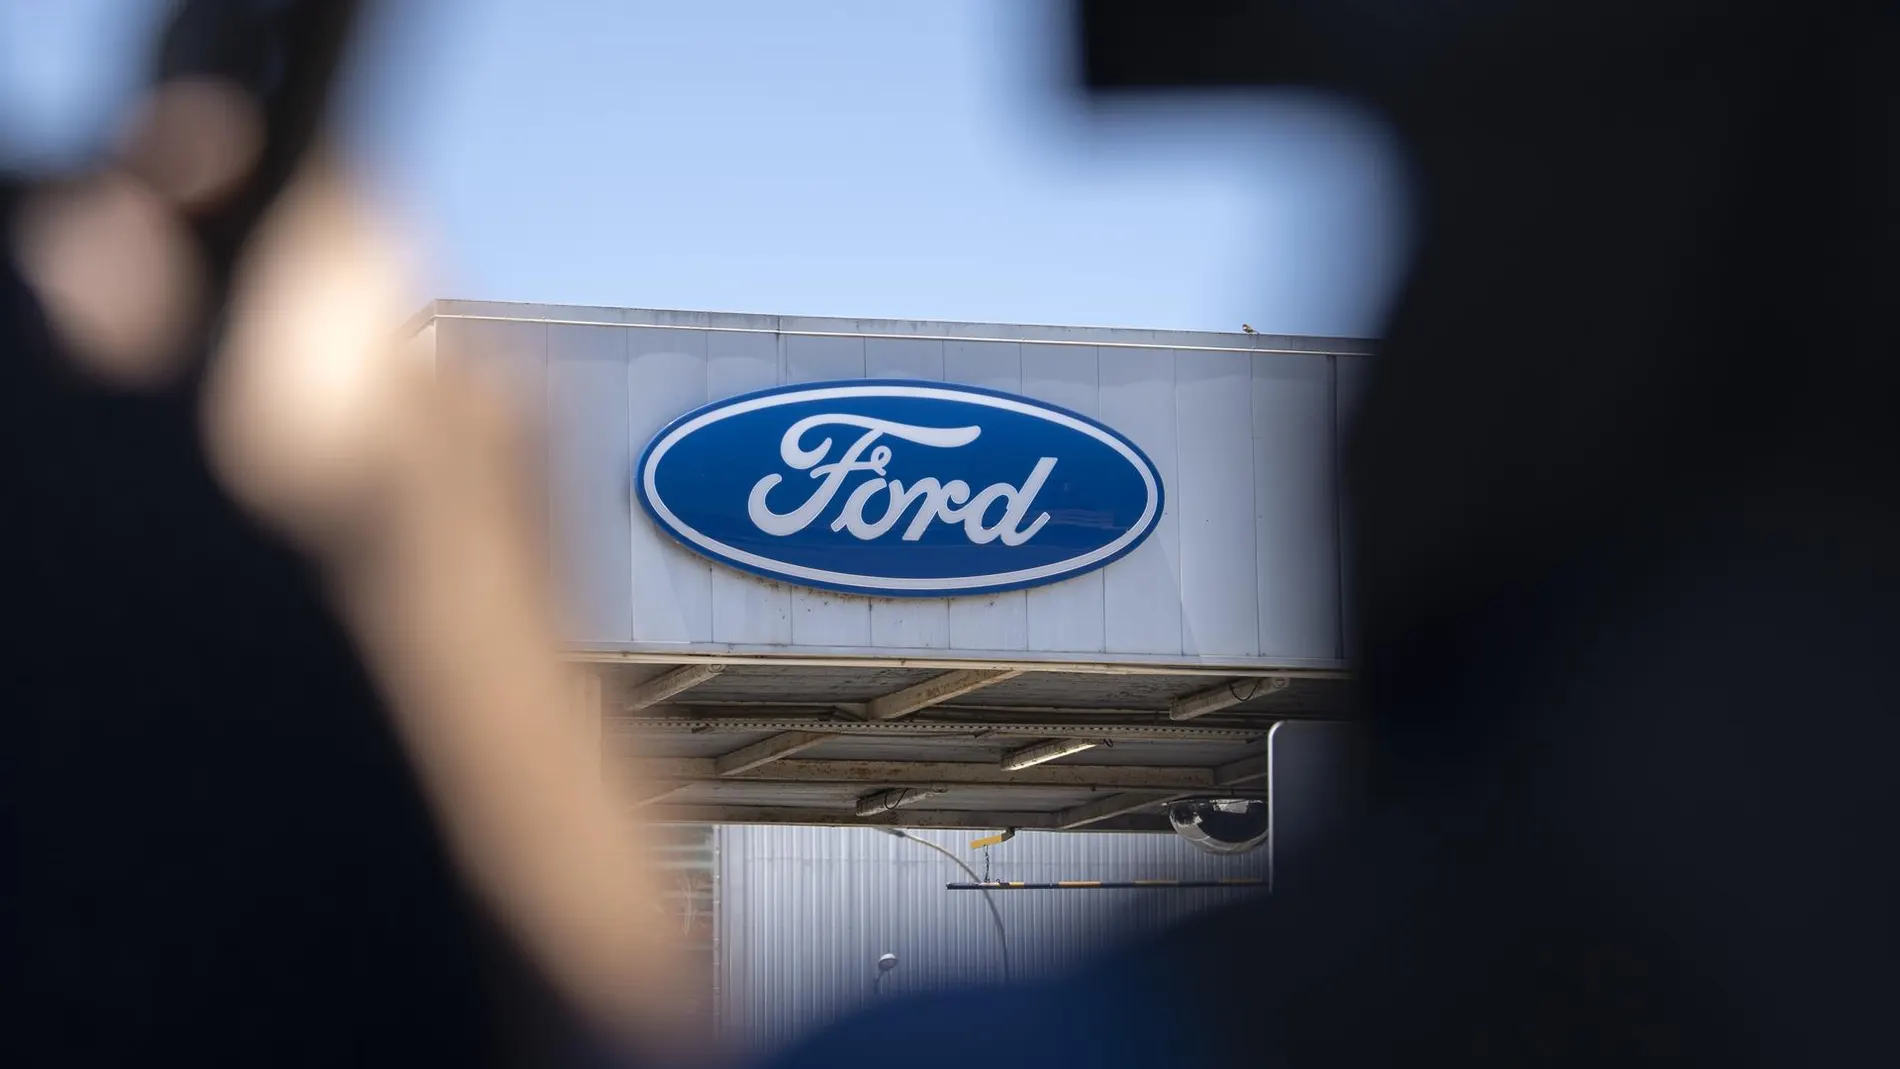 Economía.- Ford trabaja en "una alternativa para solucionar" la situación en la fábrica de Almussafes, según UGT